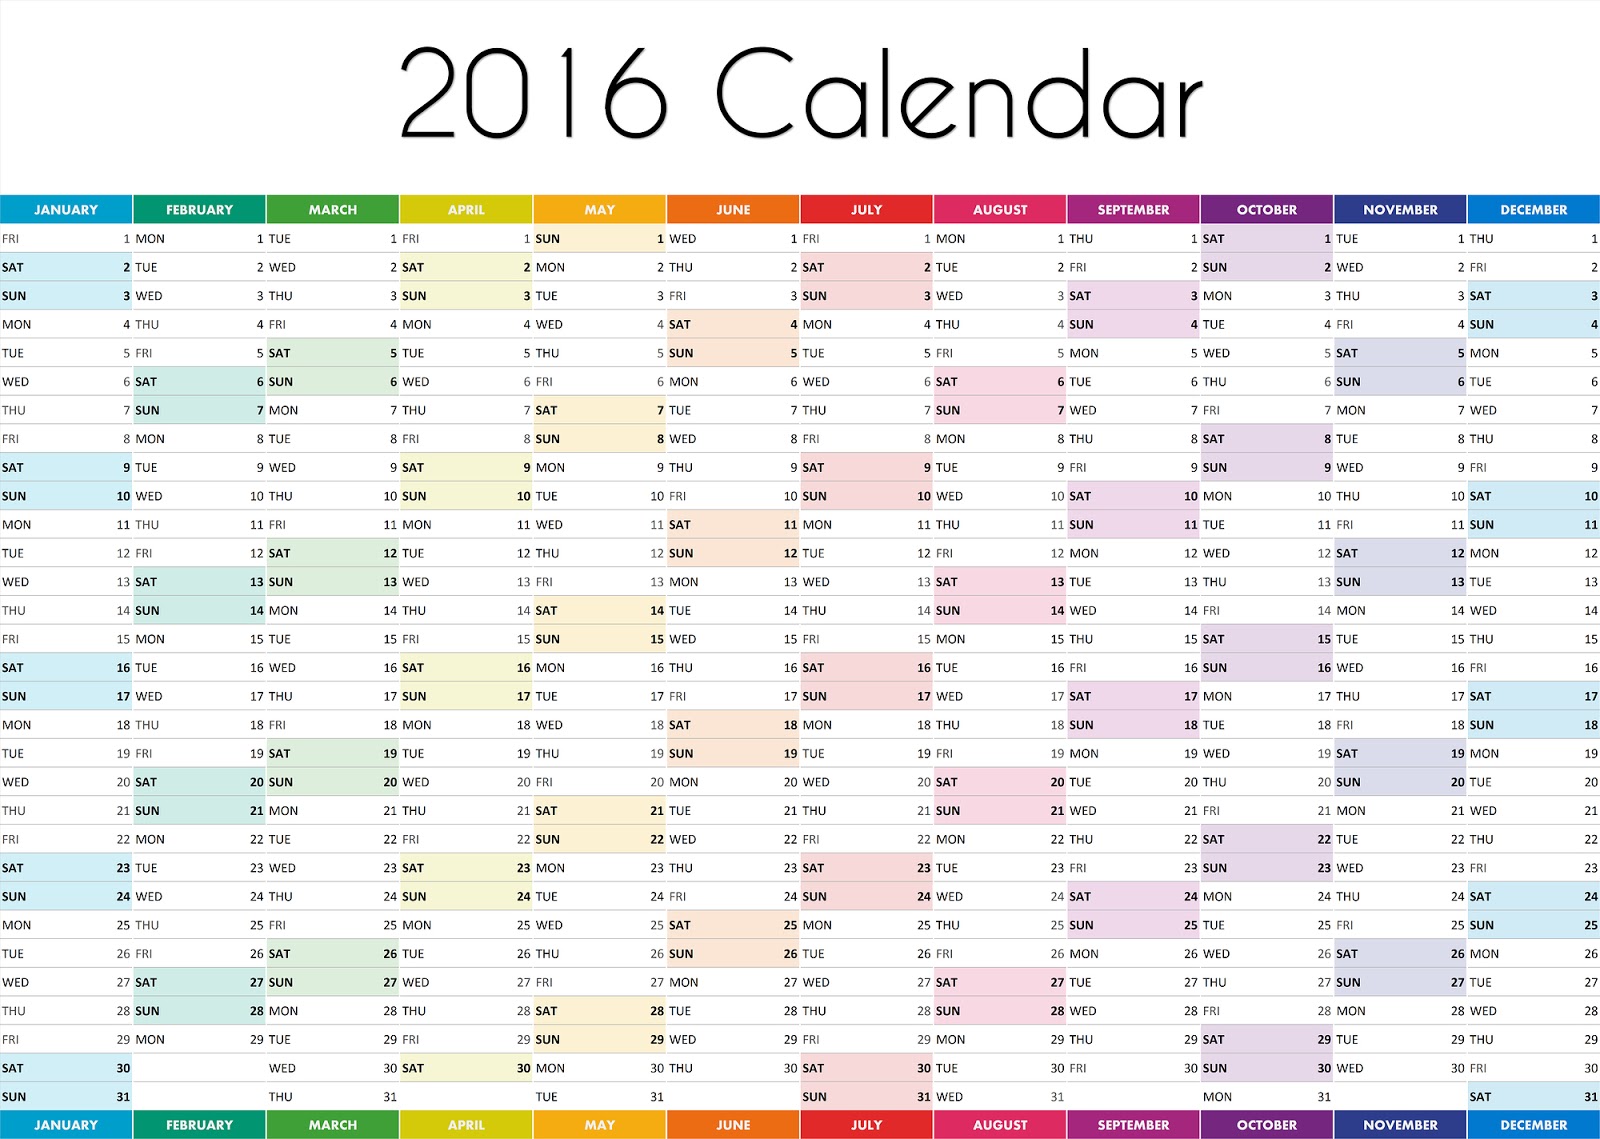 2016 calendar calendar 2016 desktop calendar 2016